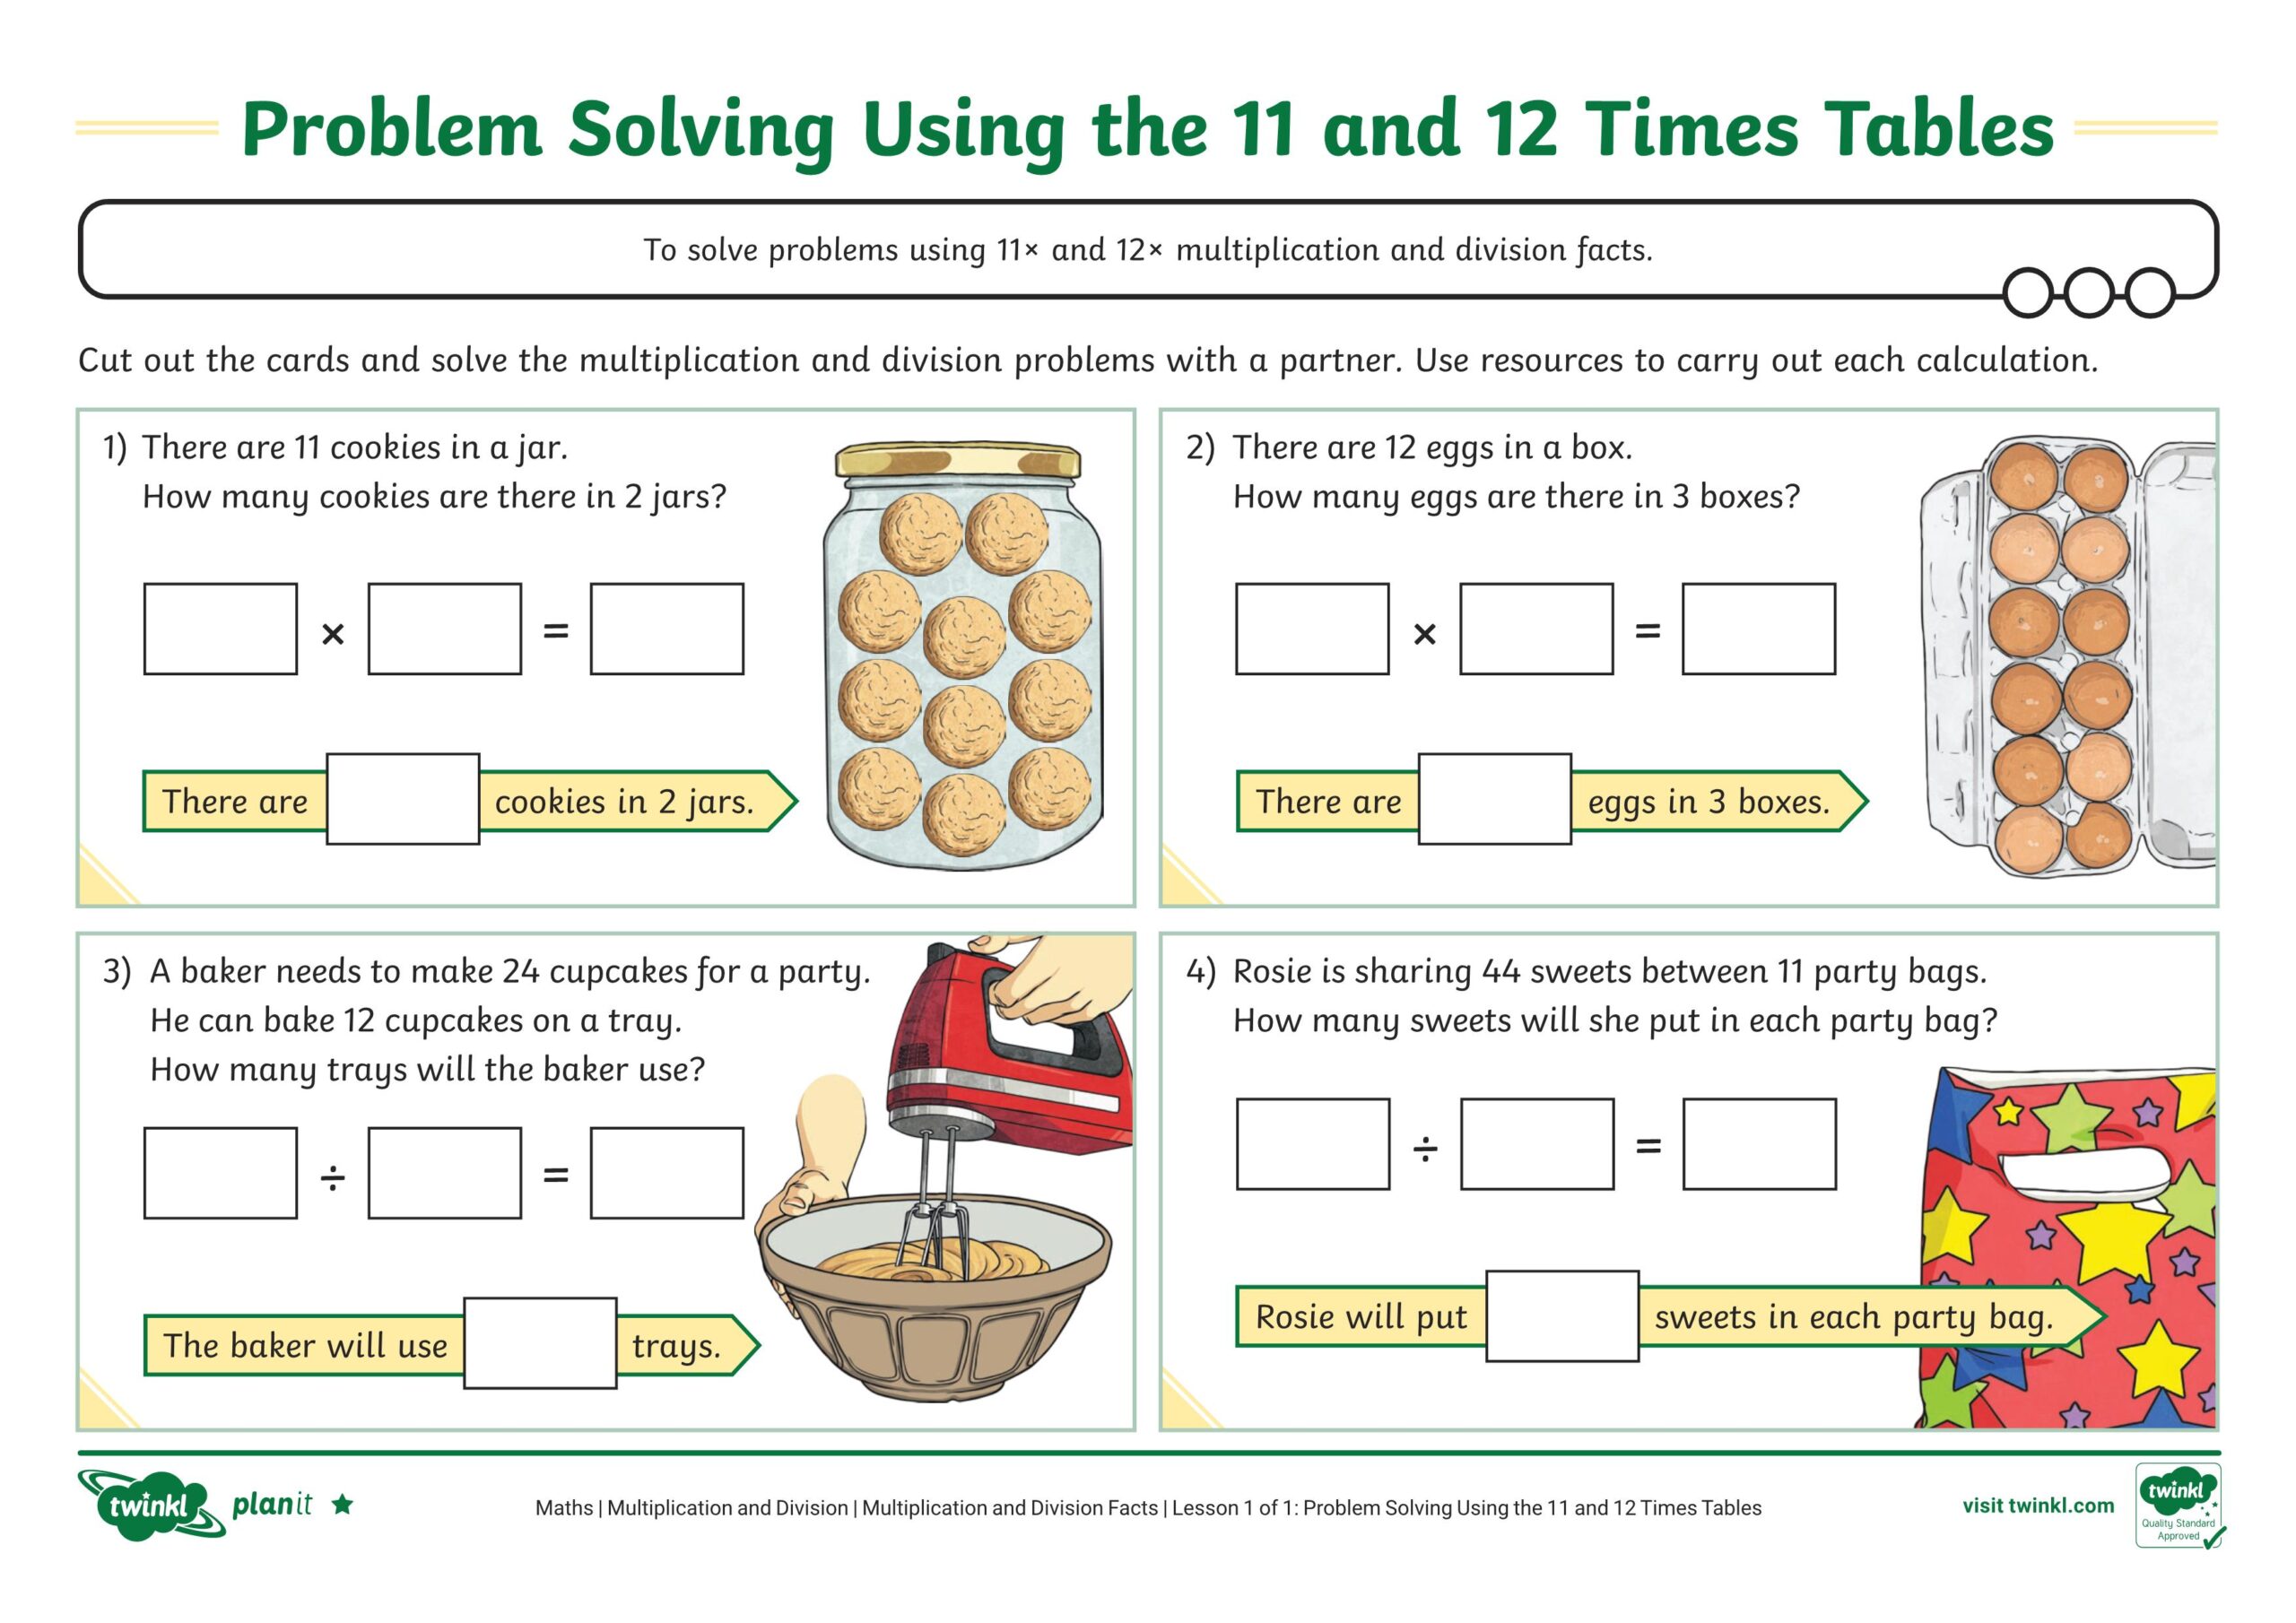 ورقة عمل Problem Solving Using the 11 and 12 Times Tables الرياضيات المتكاملة الصف الثالث